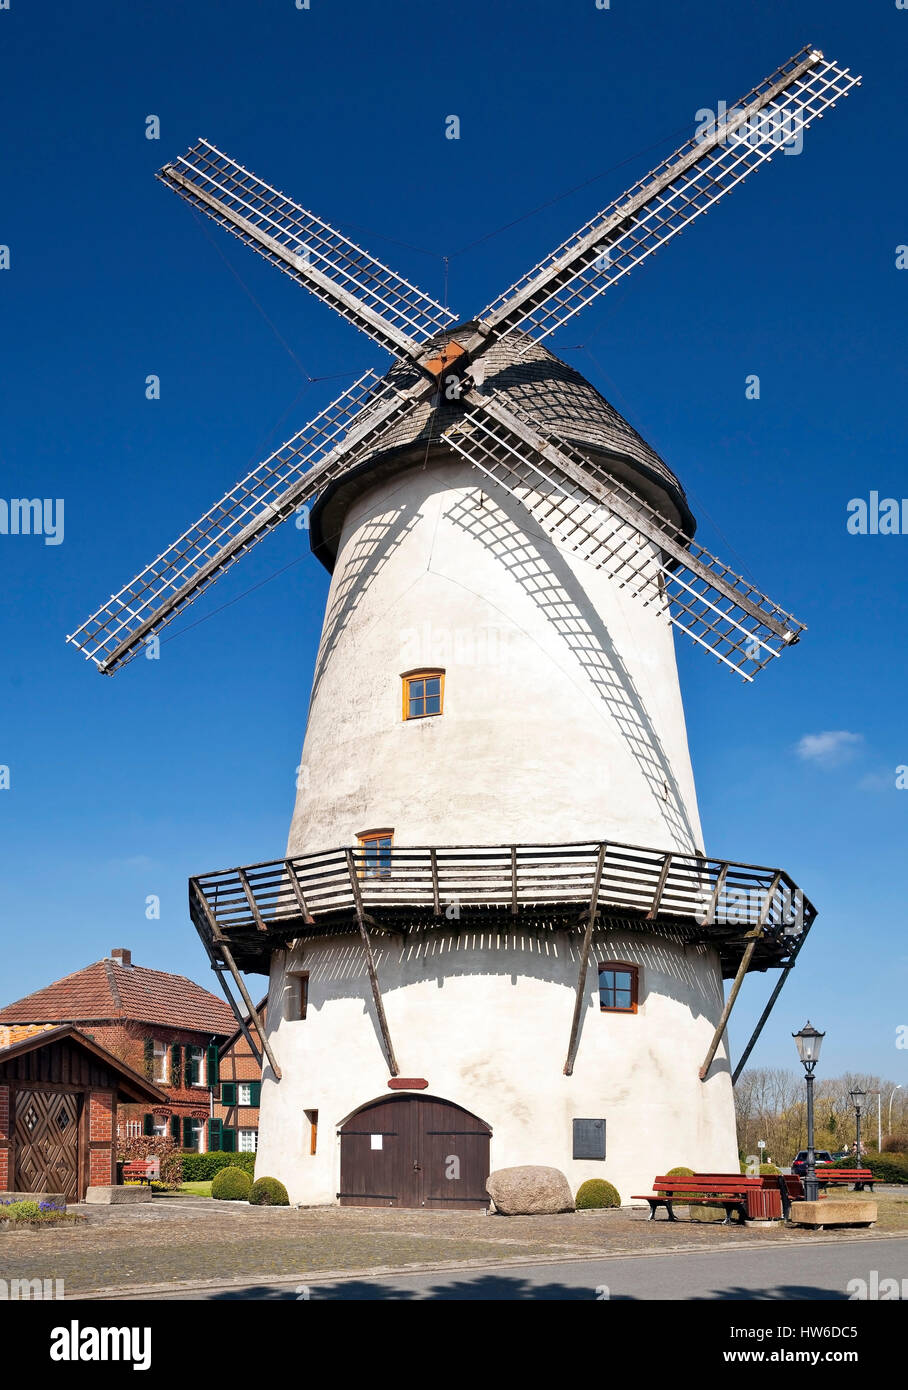 Windmuehle, Enningerloh, Kreis Warendorf, Muensterland, Nordrhein-Westfalen, Deutschland, Europa Stock Photo